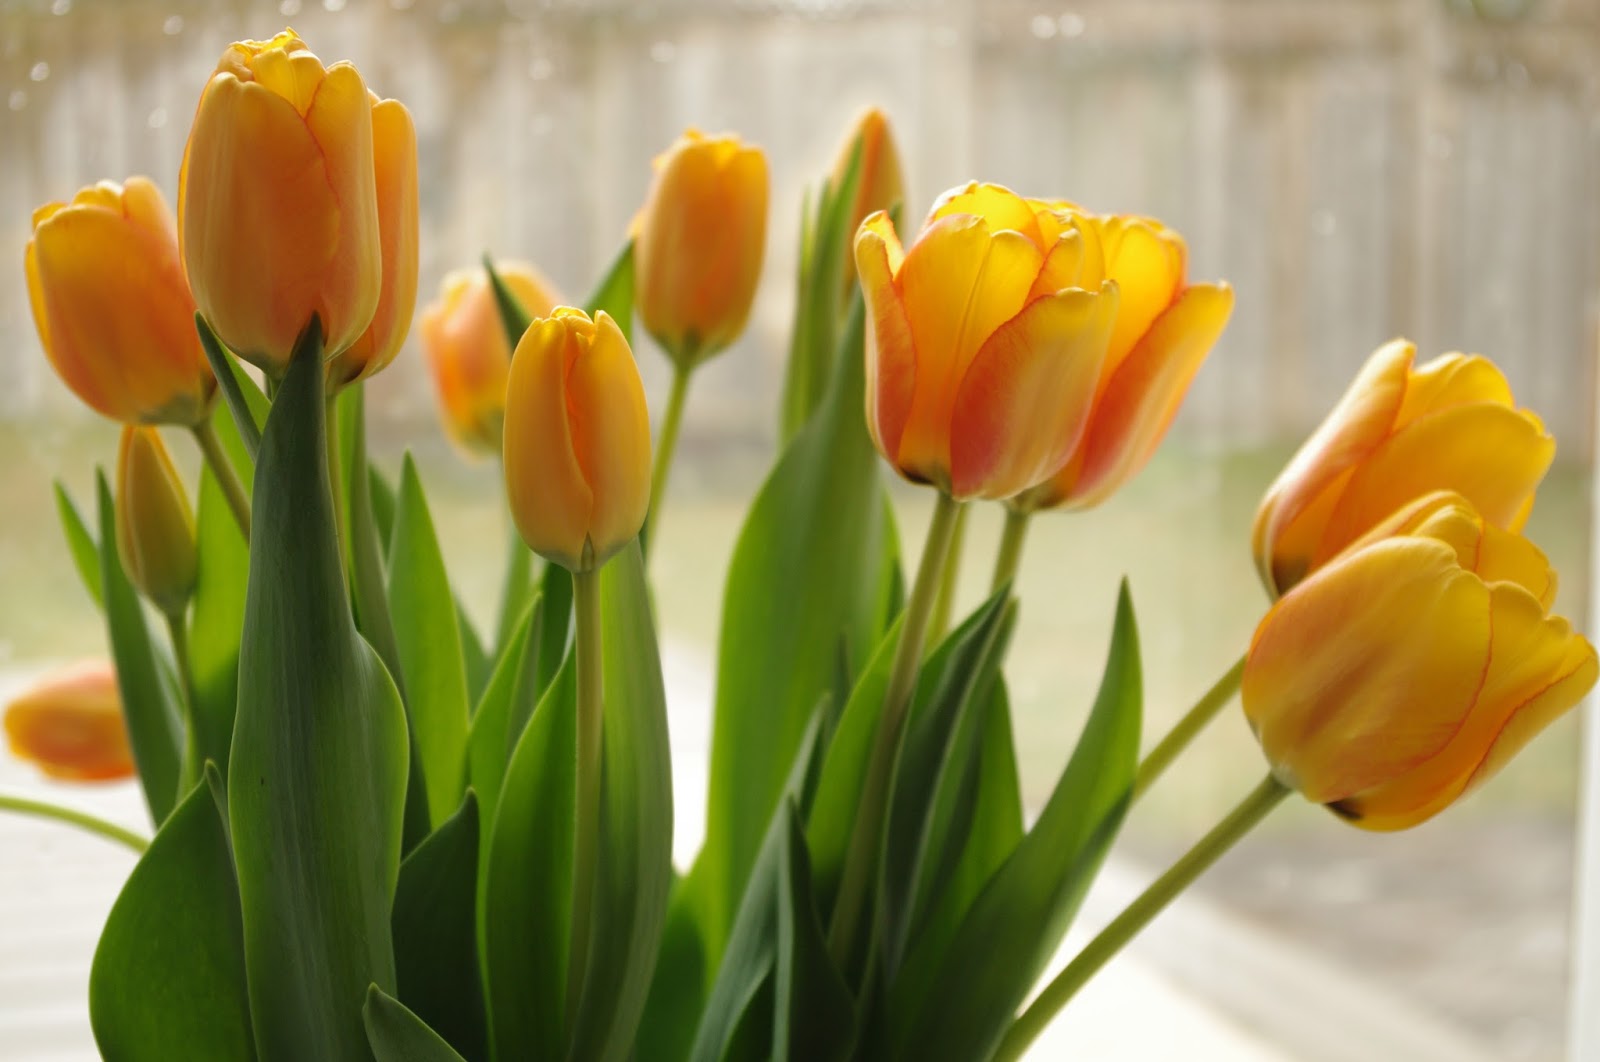 Cut tulips in winter - personallyandrea.com